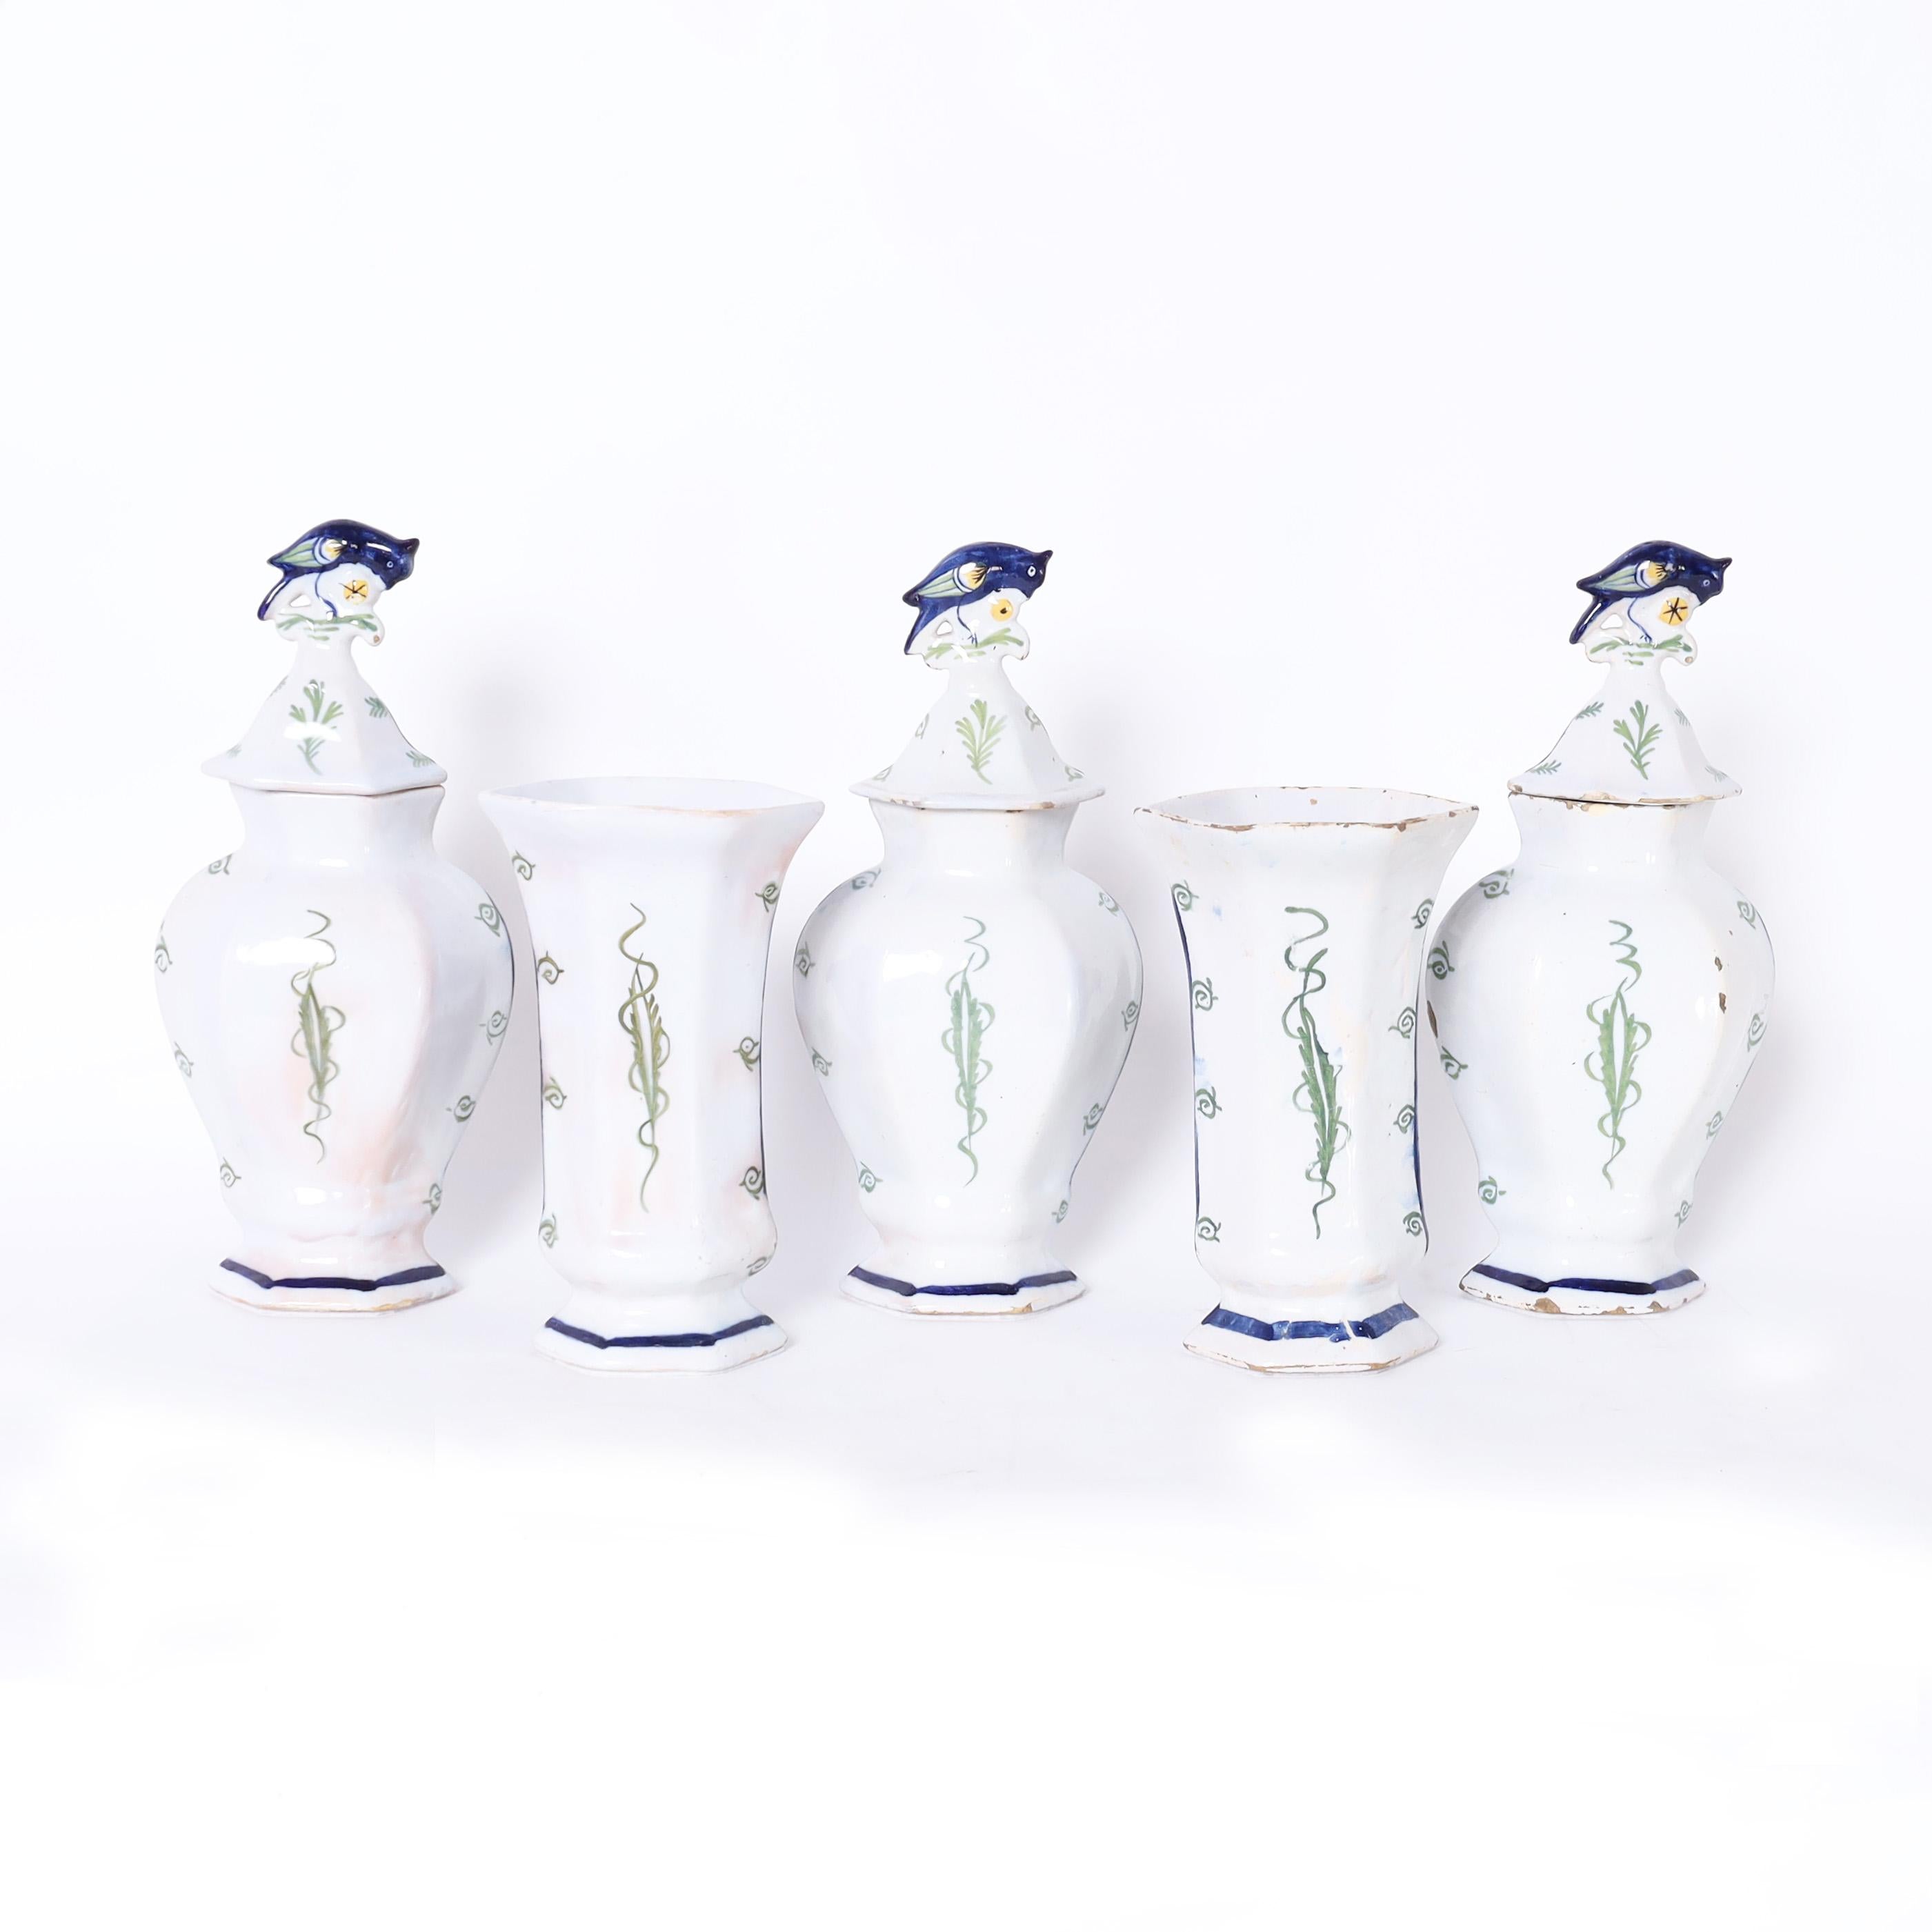 Seltene und bemerkenswerte Gruppe von fünf holländischen Delfter Stücken aus dem 18. Jahrhundert, drei Urnen mit Deckel und zwei Vasen aus Terrakotta und Polychromie, verziert mit floralen Motiven und glasiert. Signiert mit den Herstellermarken auf